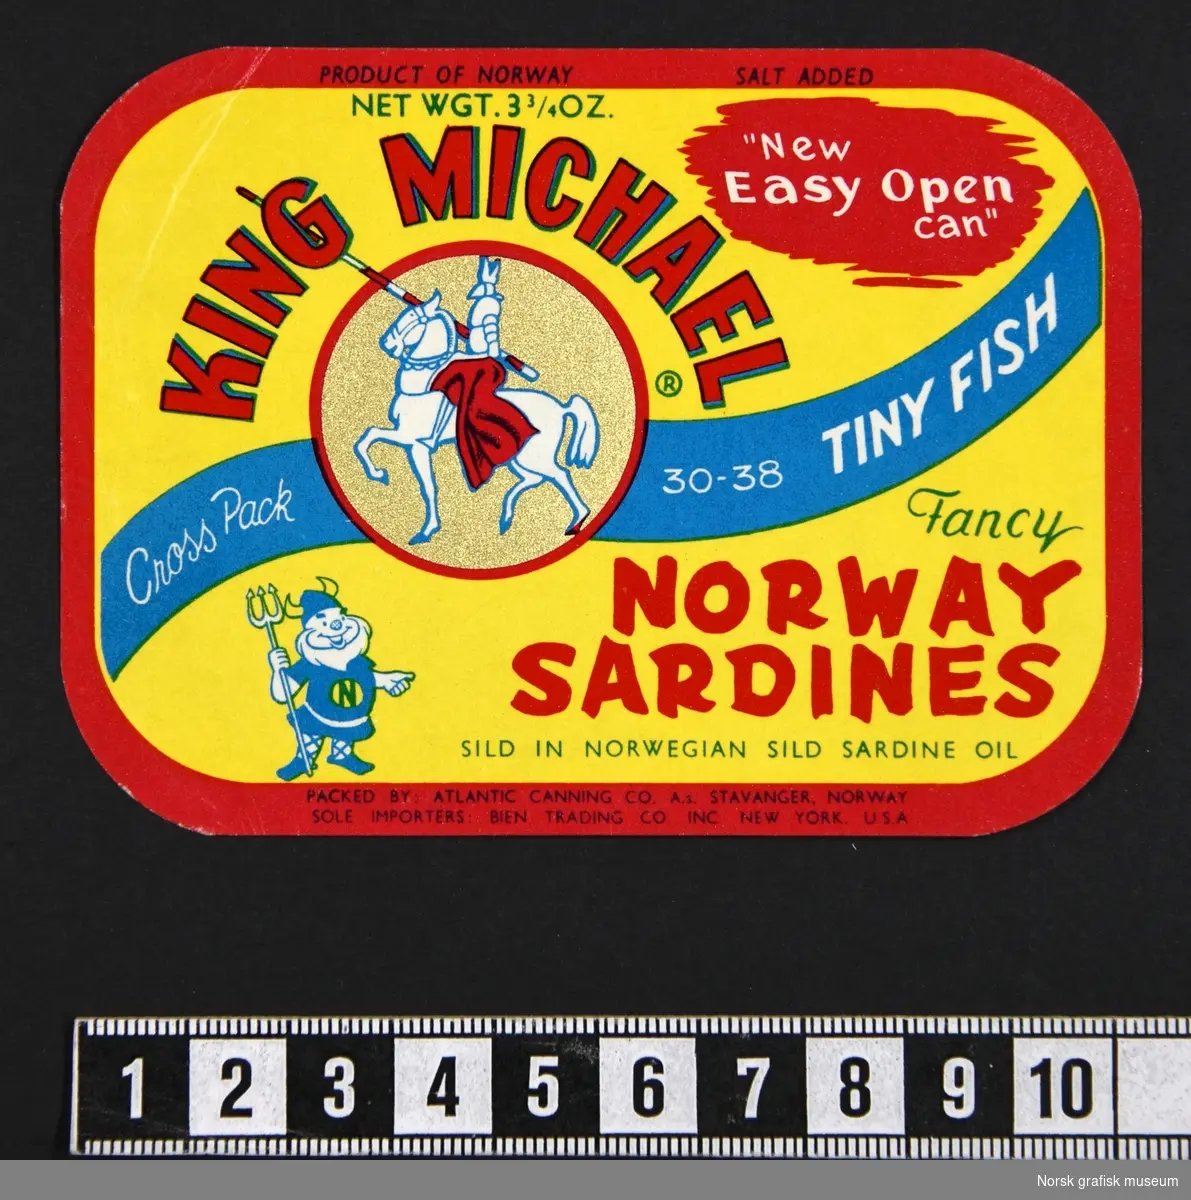 En bunke med gule etiketter med rød ramme. En blå bølget linje går diagolnalt over, med varemerkets logo (en rytter med lanse) i en sirkulær ramme. 

"Fancy Norway sardines sild in Norwegian sild sardine oil"